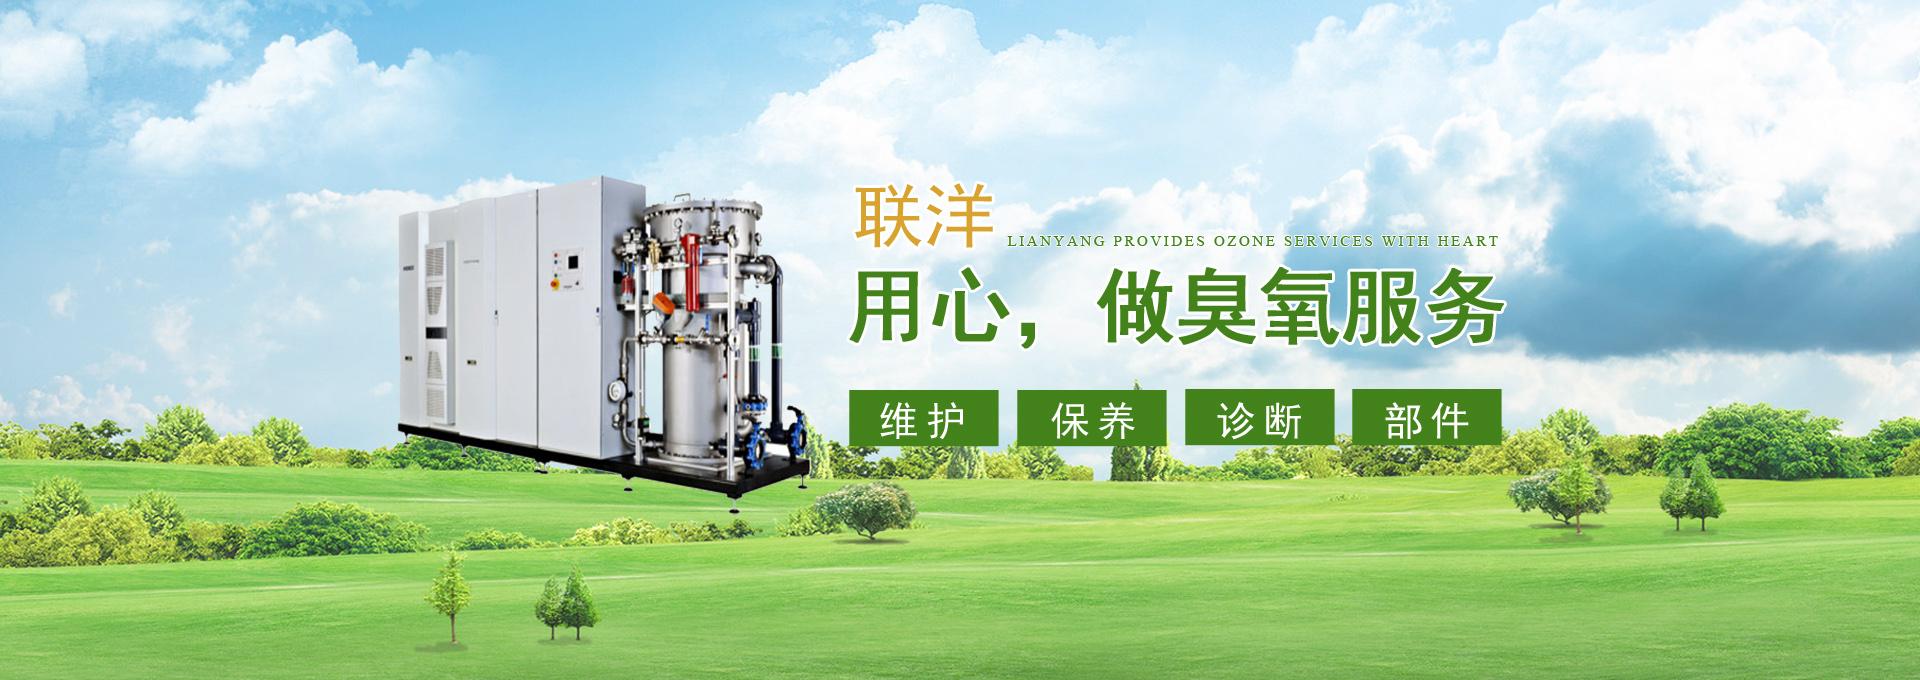 南京联洋臭氧设备服务有限公司